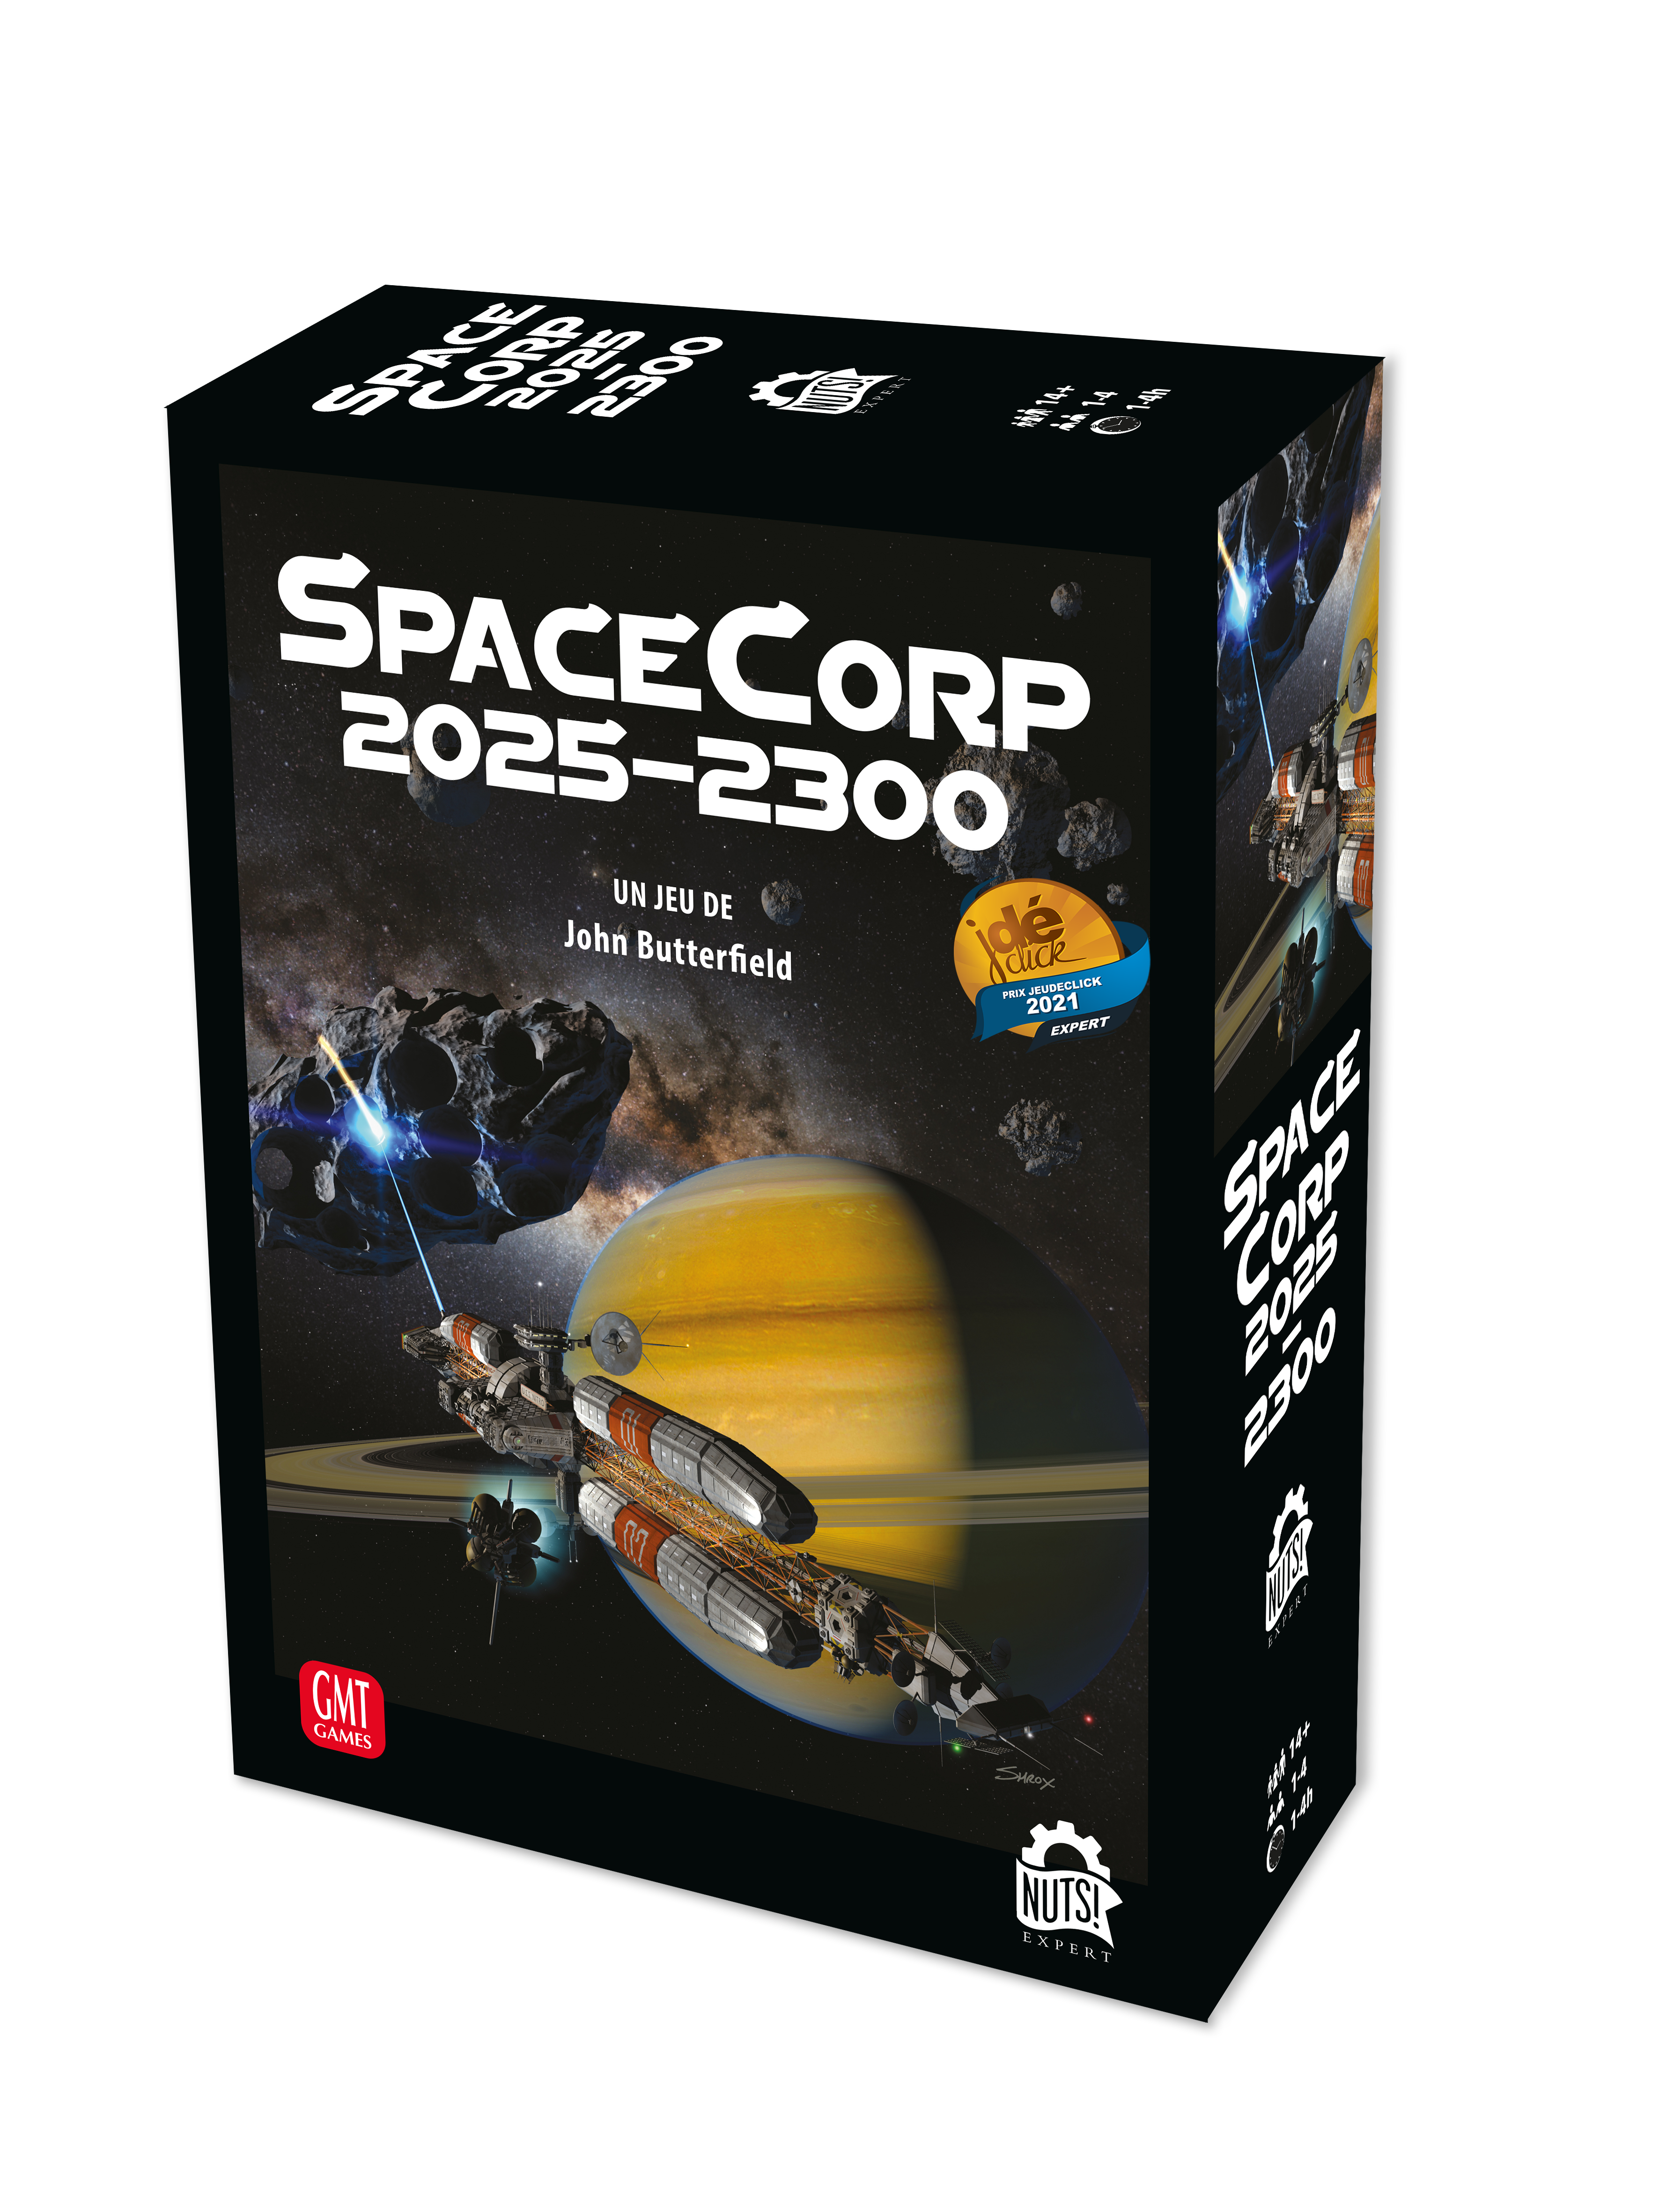 Nouvelle variante Solo pour SpaceCorp 2025 - 2300